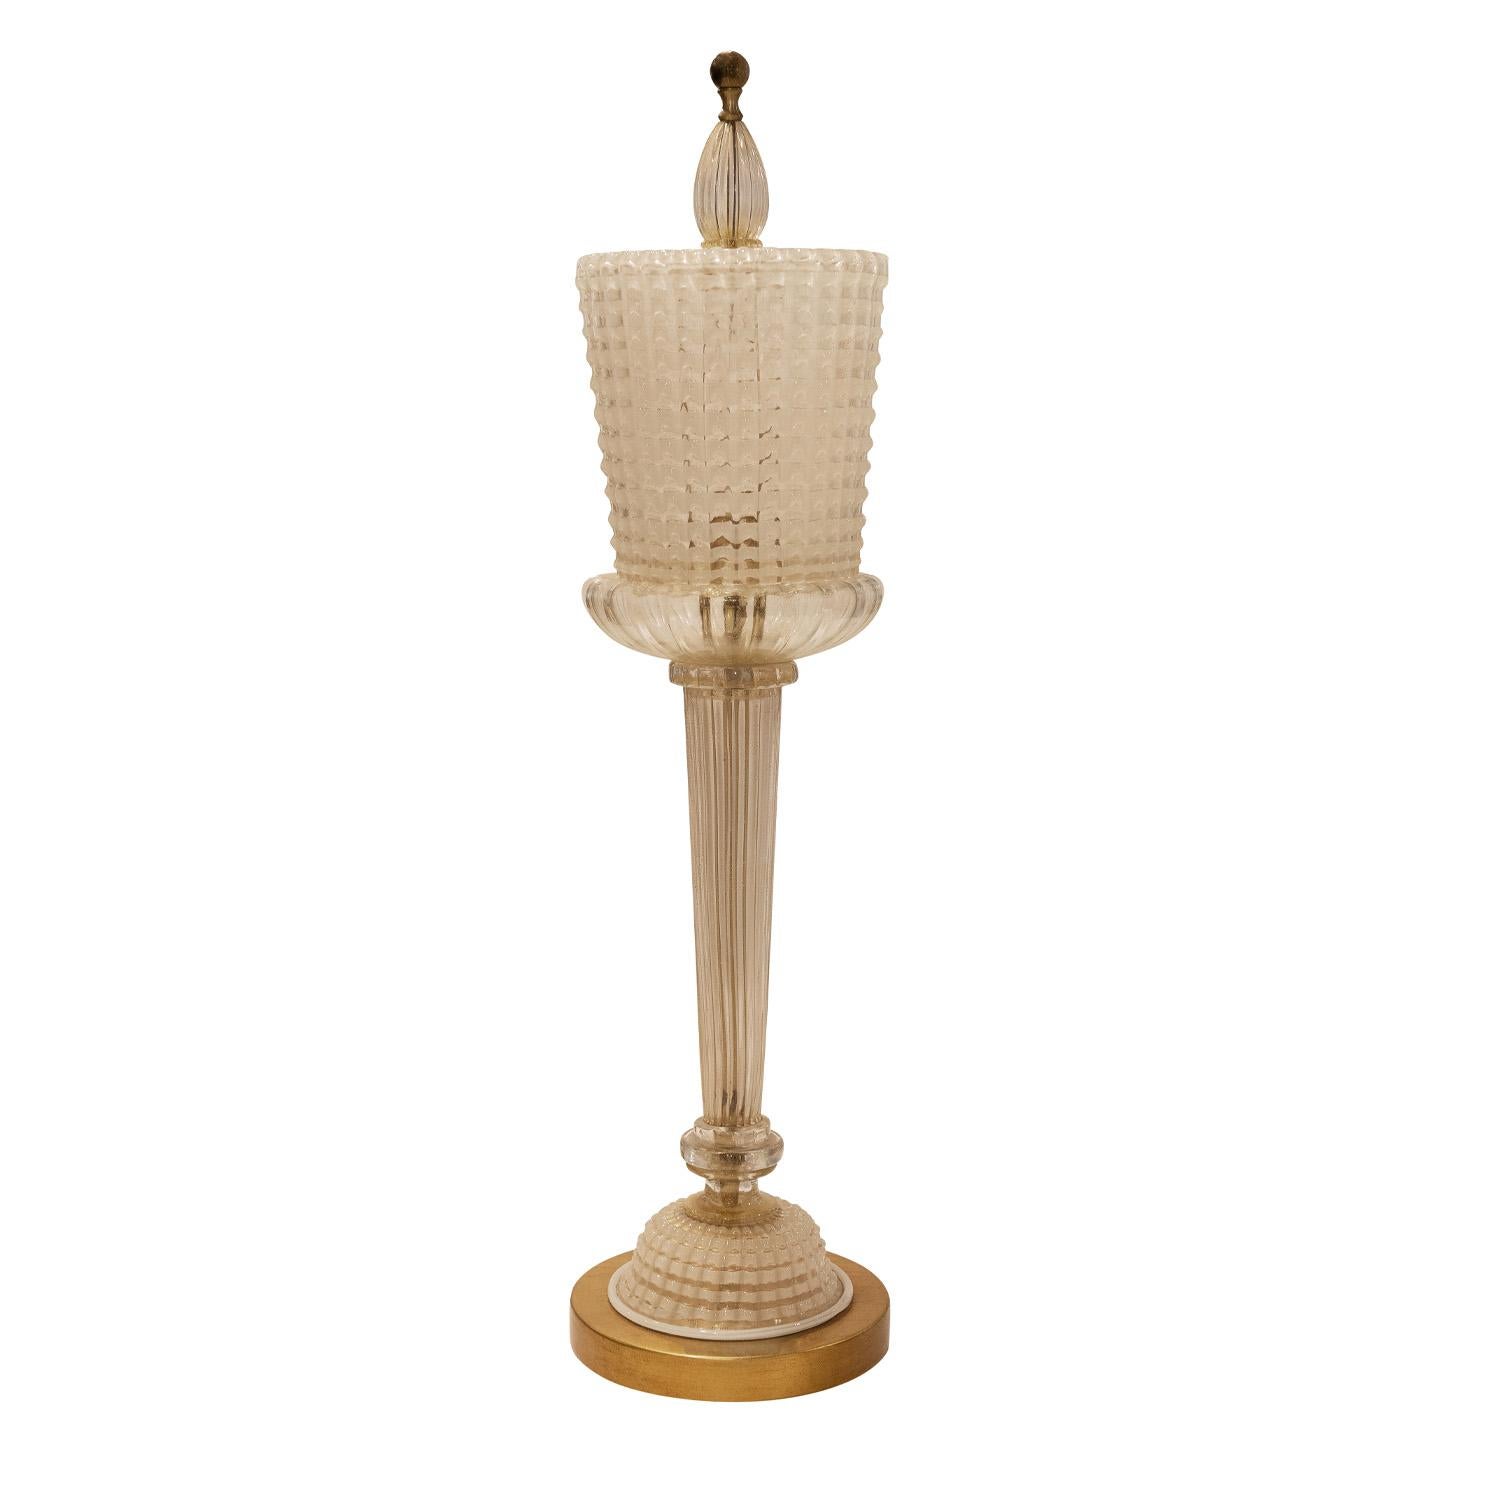 Exquisite und hervorragend ausgeführte Tischlampe aus mundgeblasenem Glas mit Goldfolie auf vergoldetem Sockel von Seguso, Murano Italien, 1950er Jahre. Die Kunstfertigkeit, mit der eine Tischlampe dieser Größe und Komplexität geblasen wird, ist